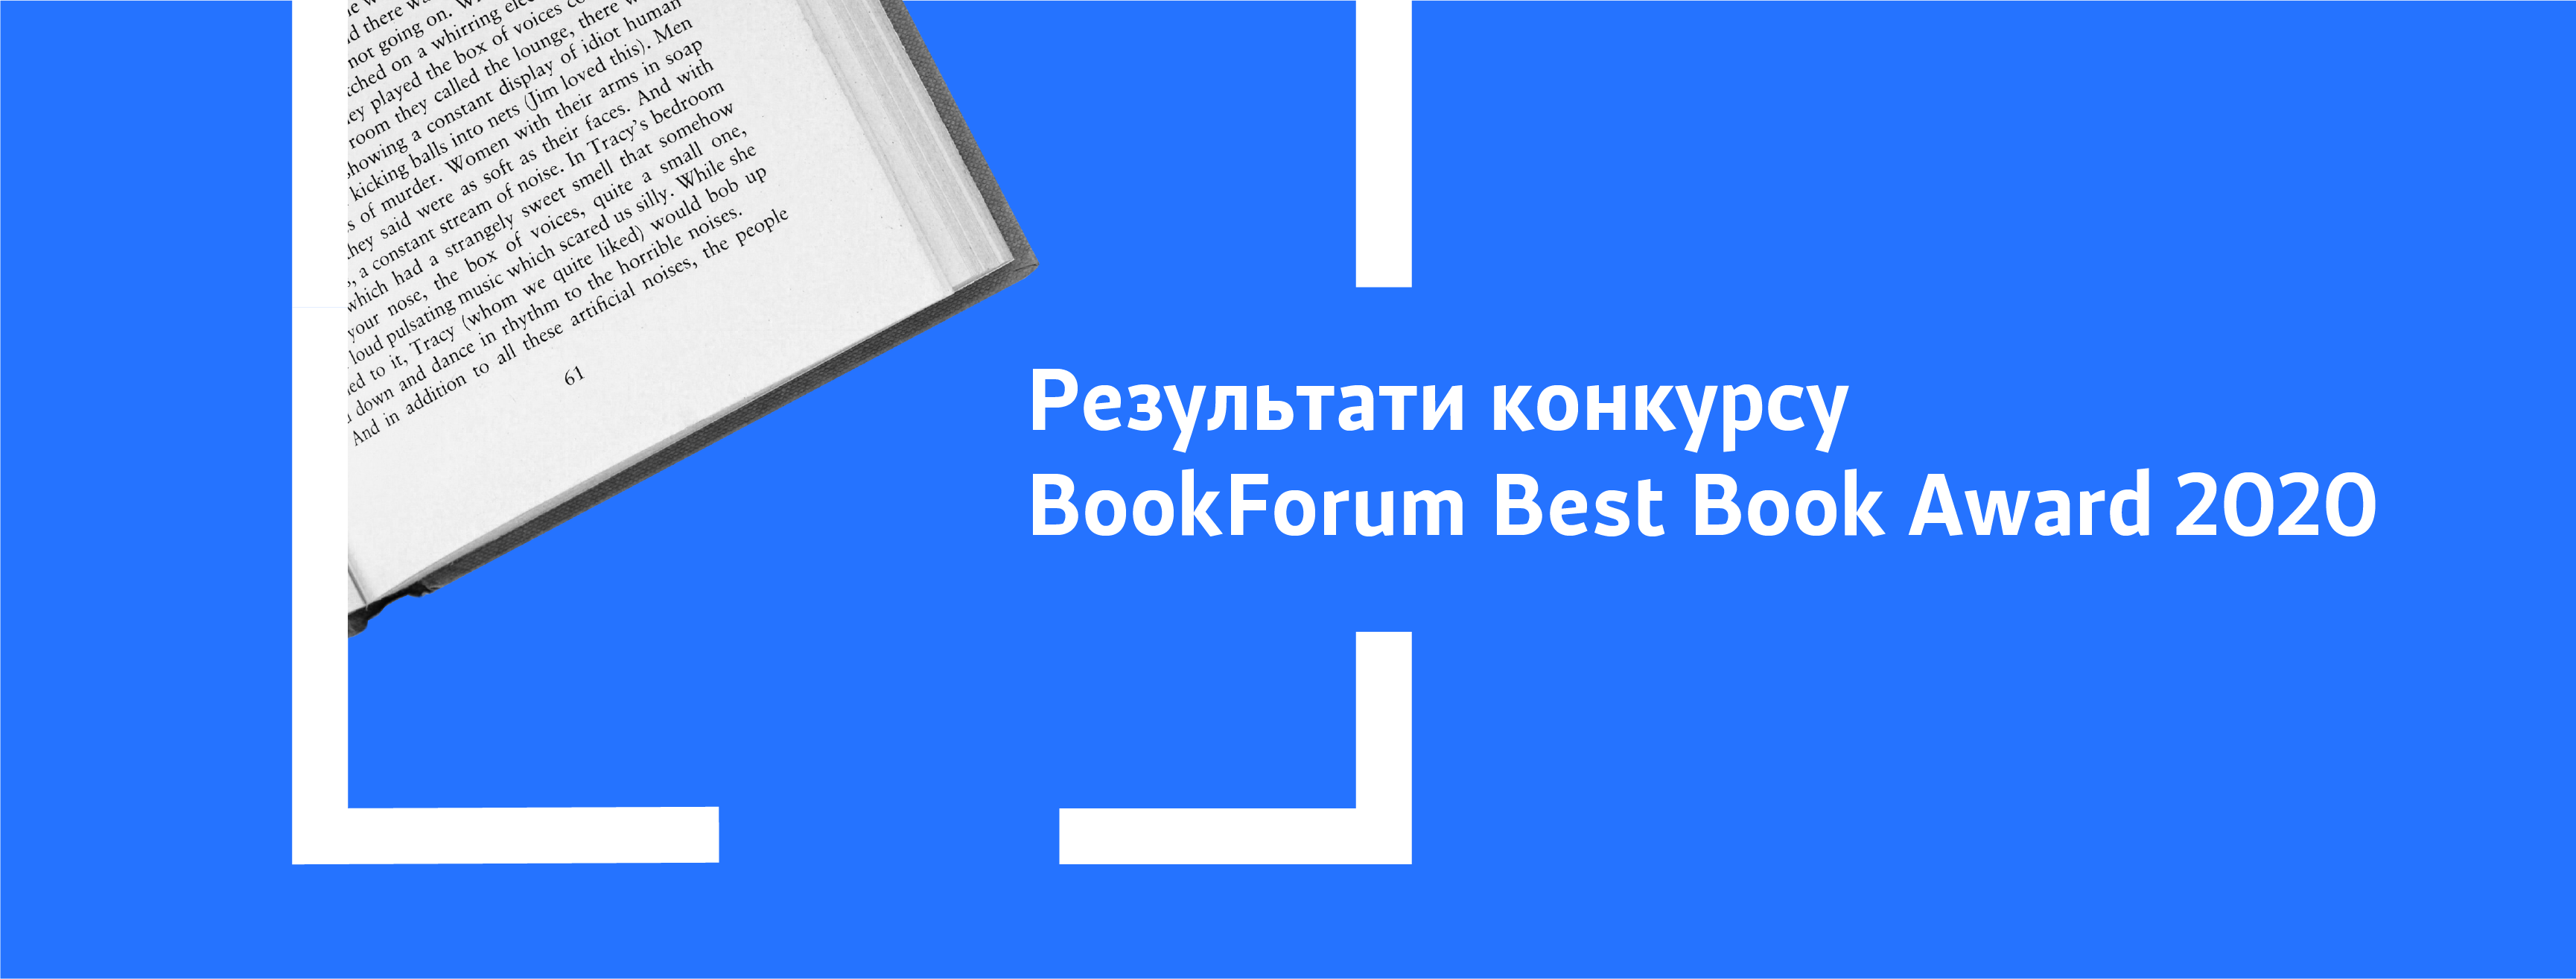 Відомі лауреати премії BookForum Best Book Award 2020